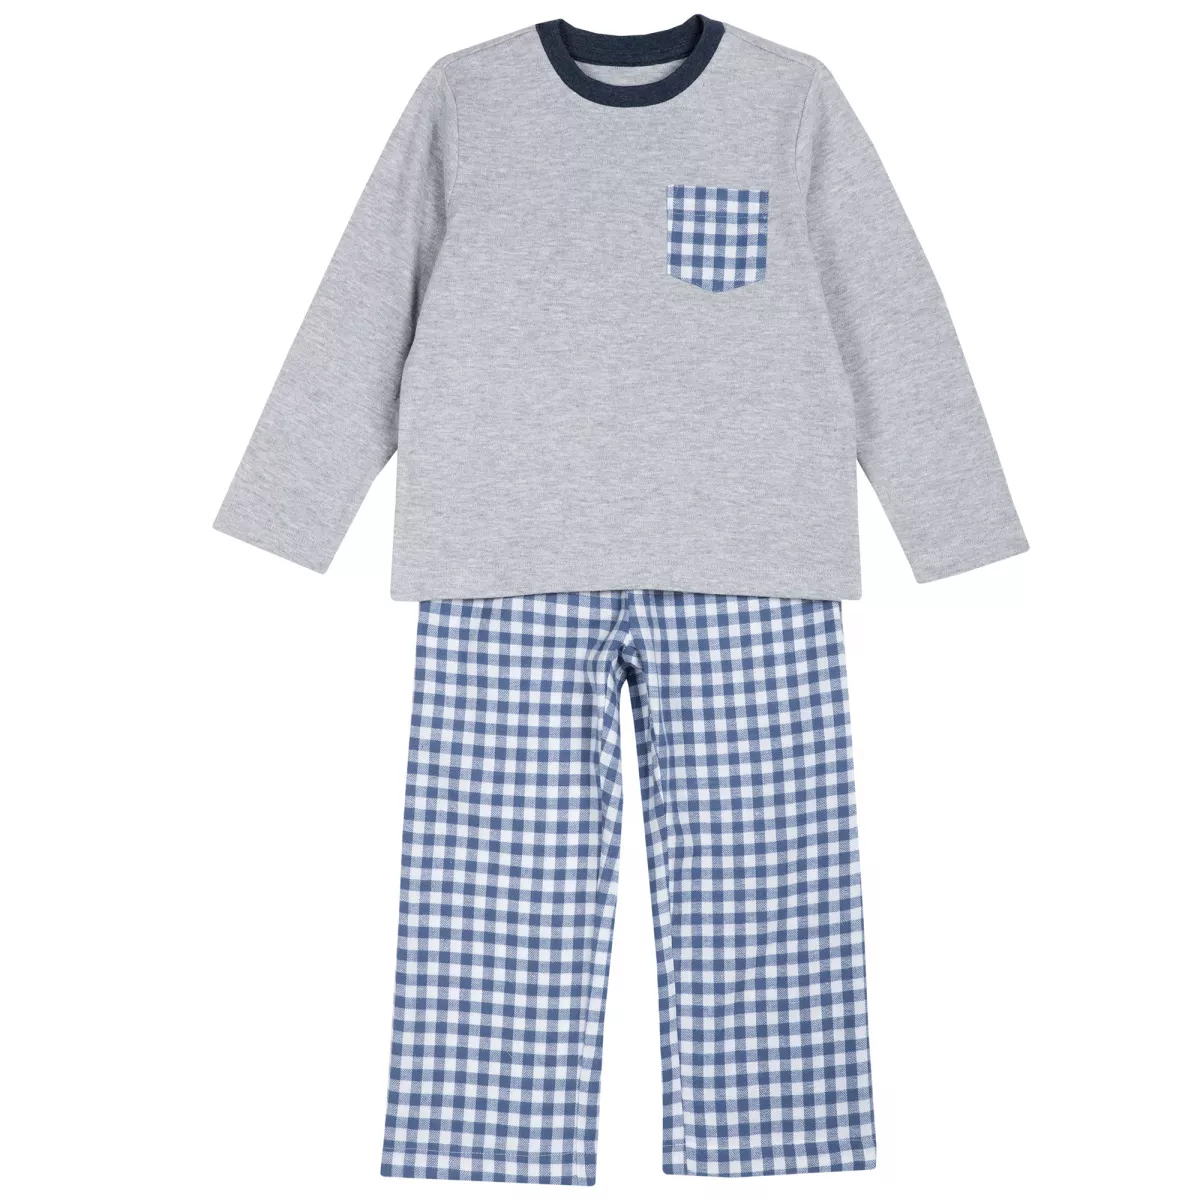 Pijama copii Chicco, gri, 104